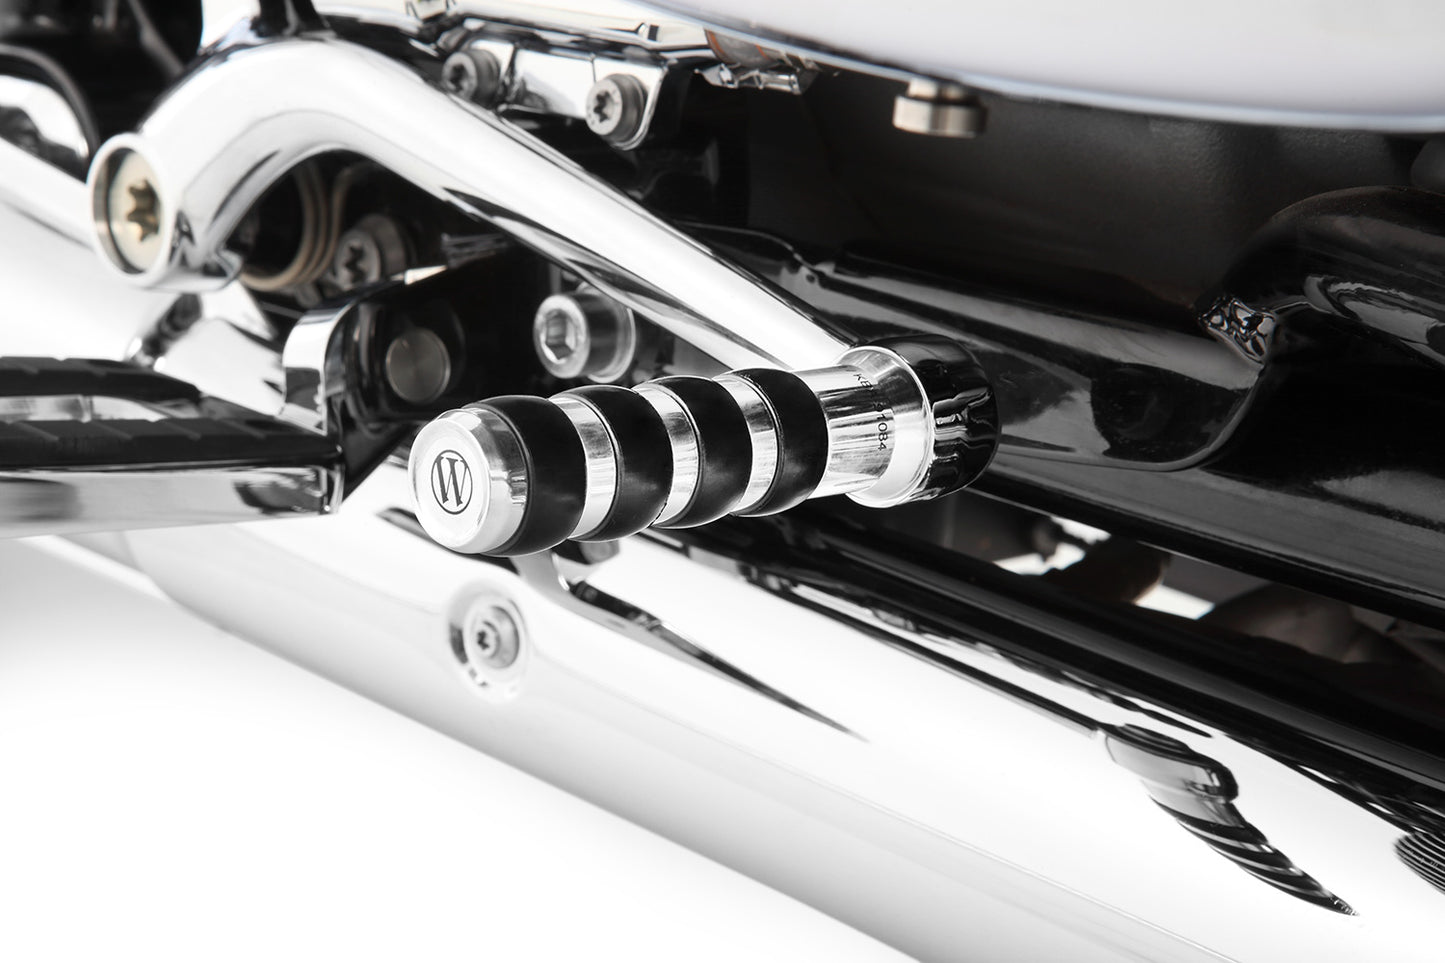 Wunderlich brake lever extension for models with footrests - chromed